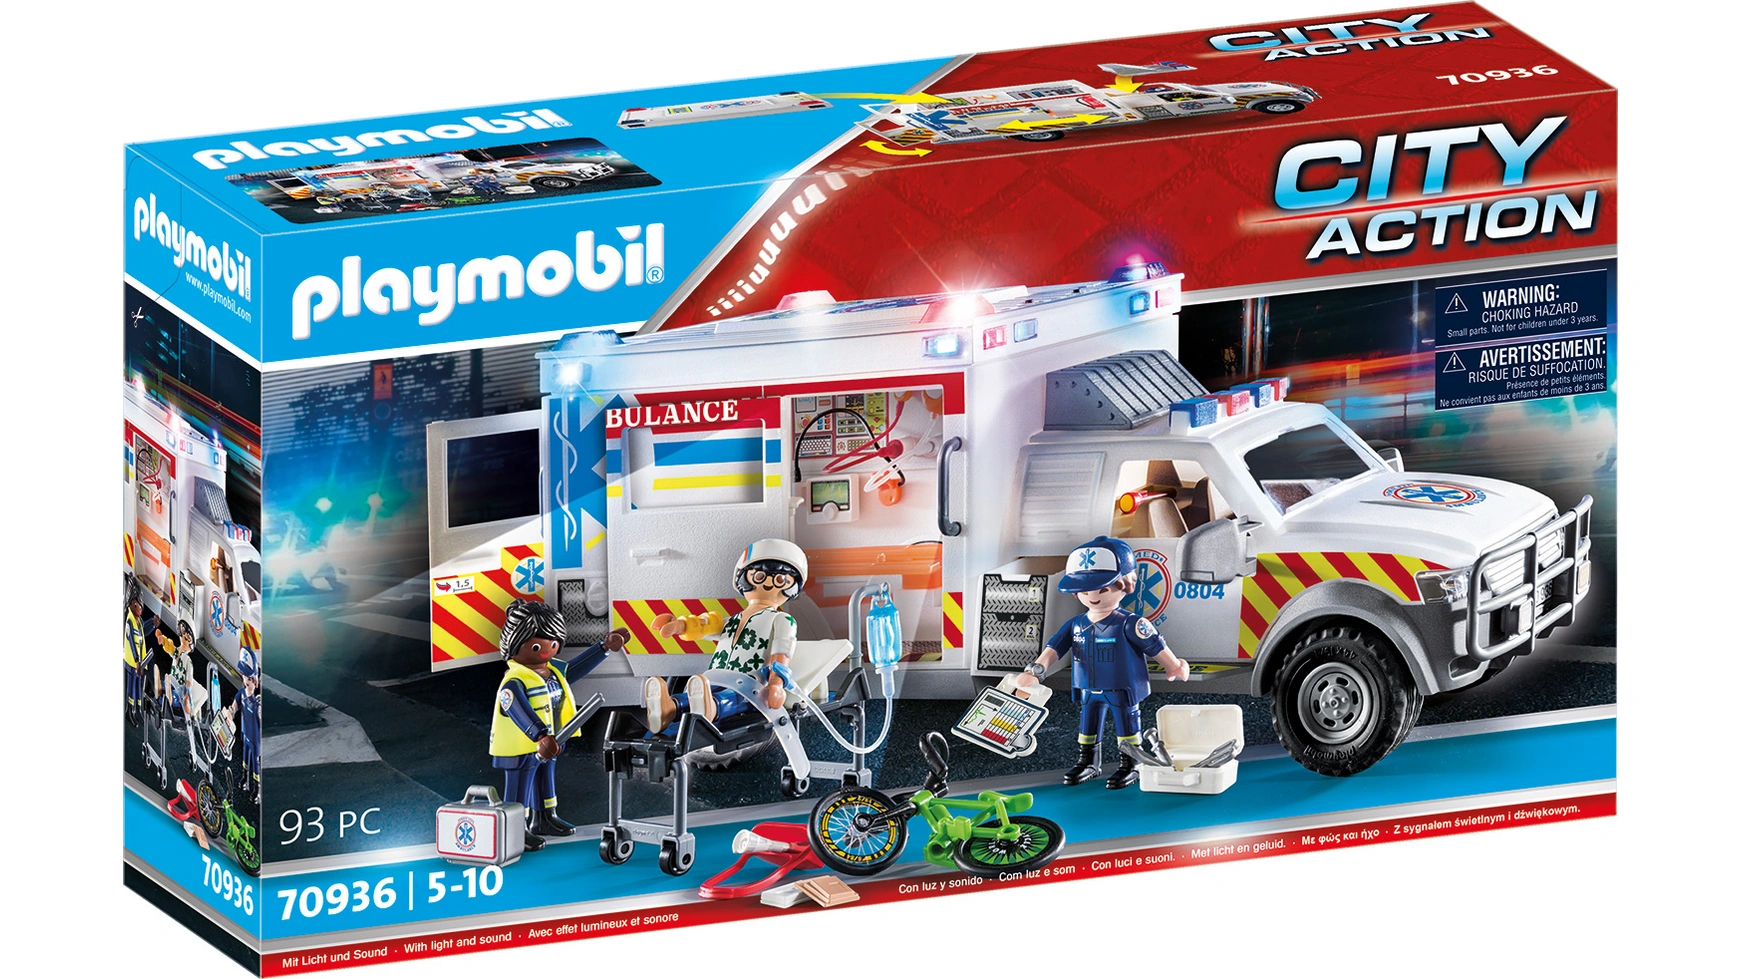 City action спасательная машина: скорая помощь сша Playmobil city action пожарно спасательная машина playmobil